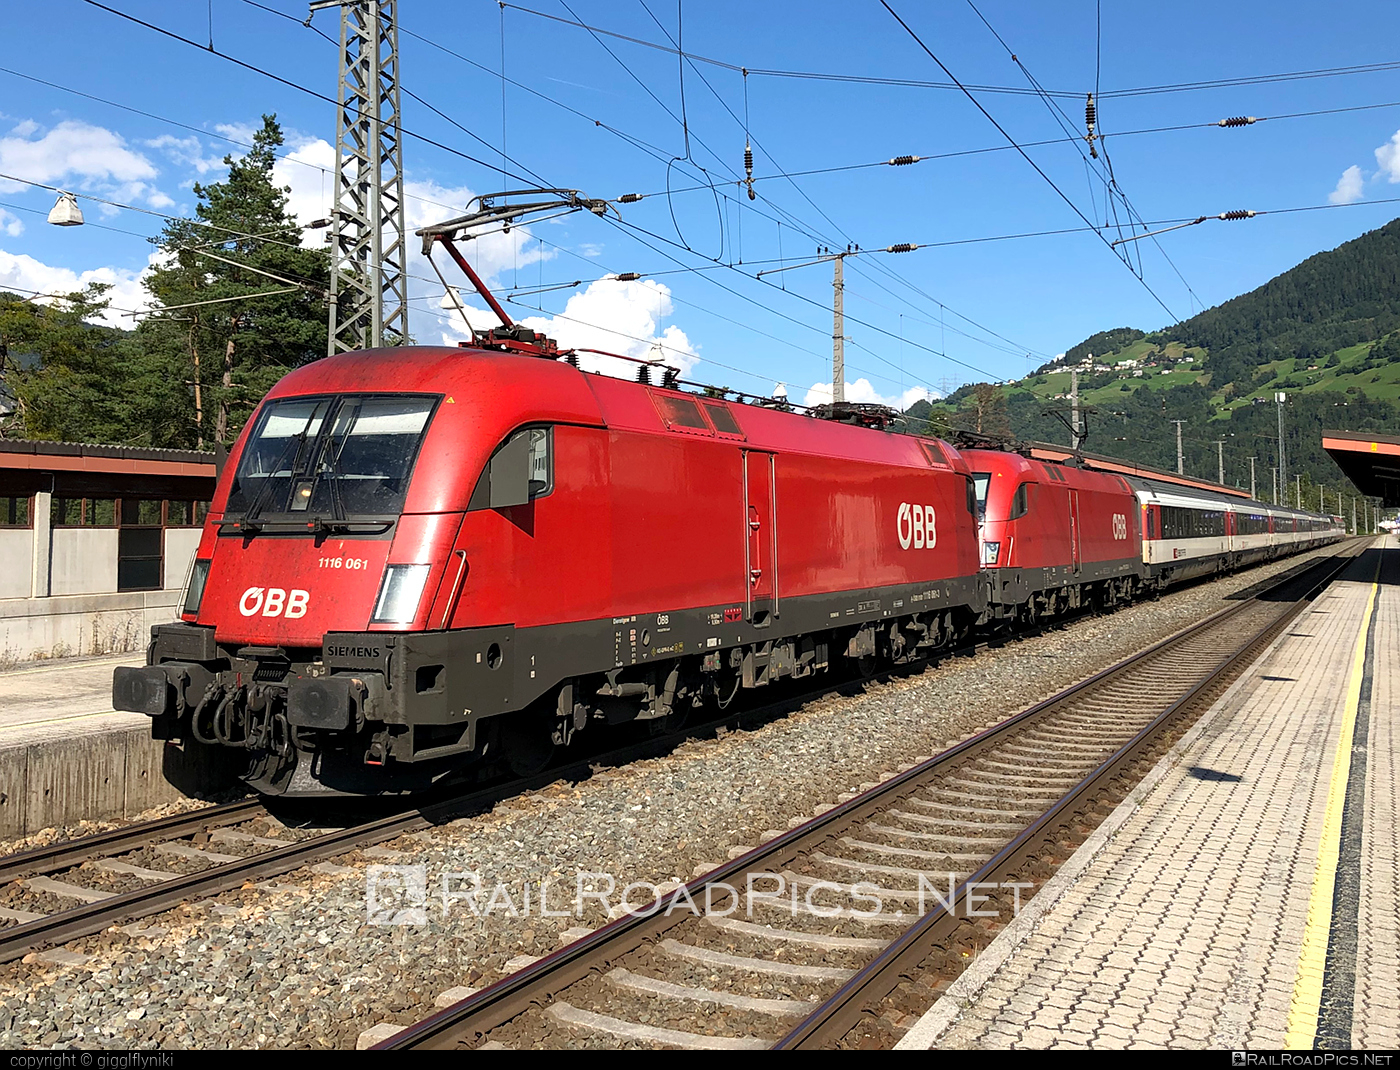 Siemens ES 64 U2 - 1116 061 operated by Österreichische Bundesbahnen #es64 #es64u2 #eurosprinter #obb #osterreichischebundesbahnen #siemens #siemensEs64 #siemensEs64u2 #siemenstaurus #taurus #tauruslocomotive